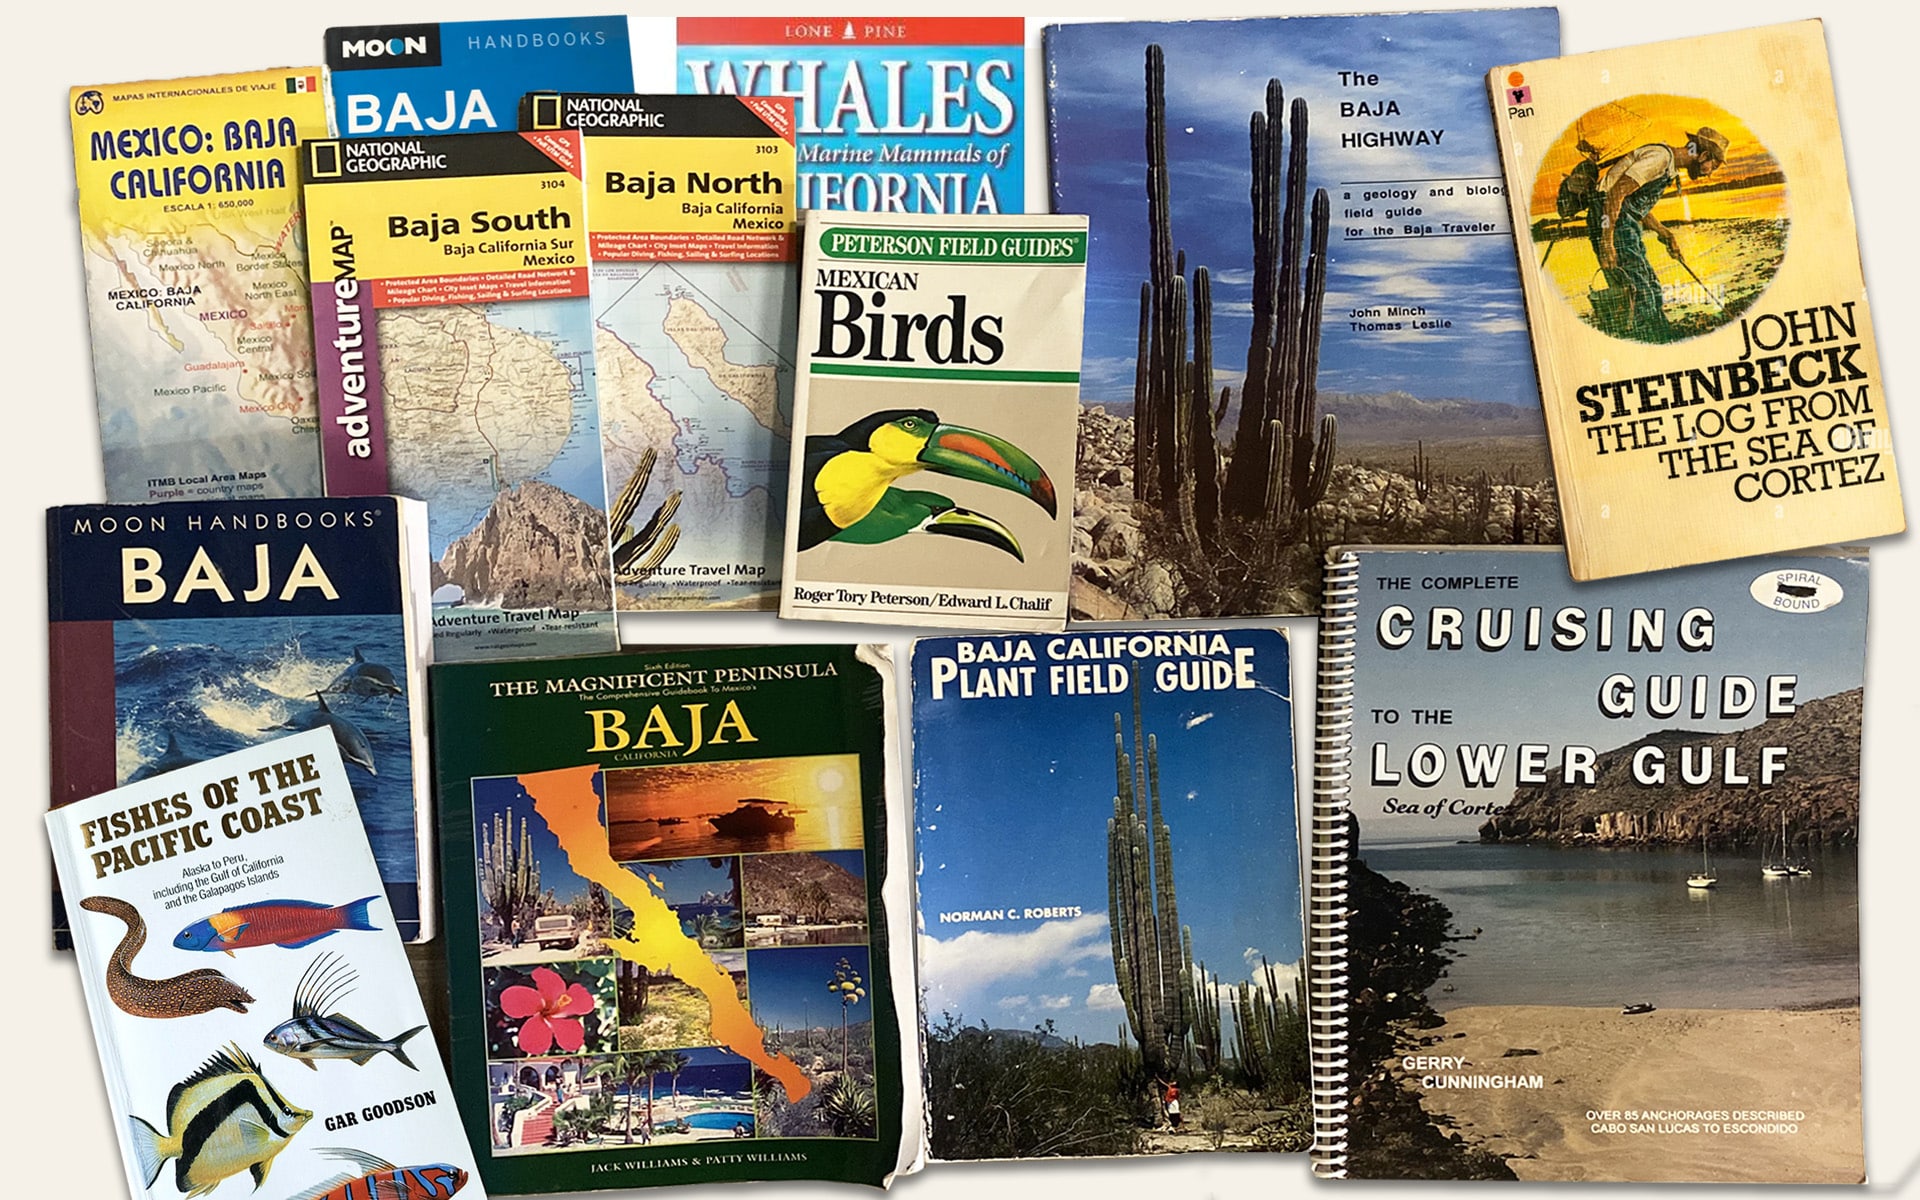 Mexico Travel Book